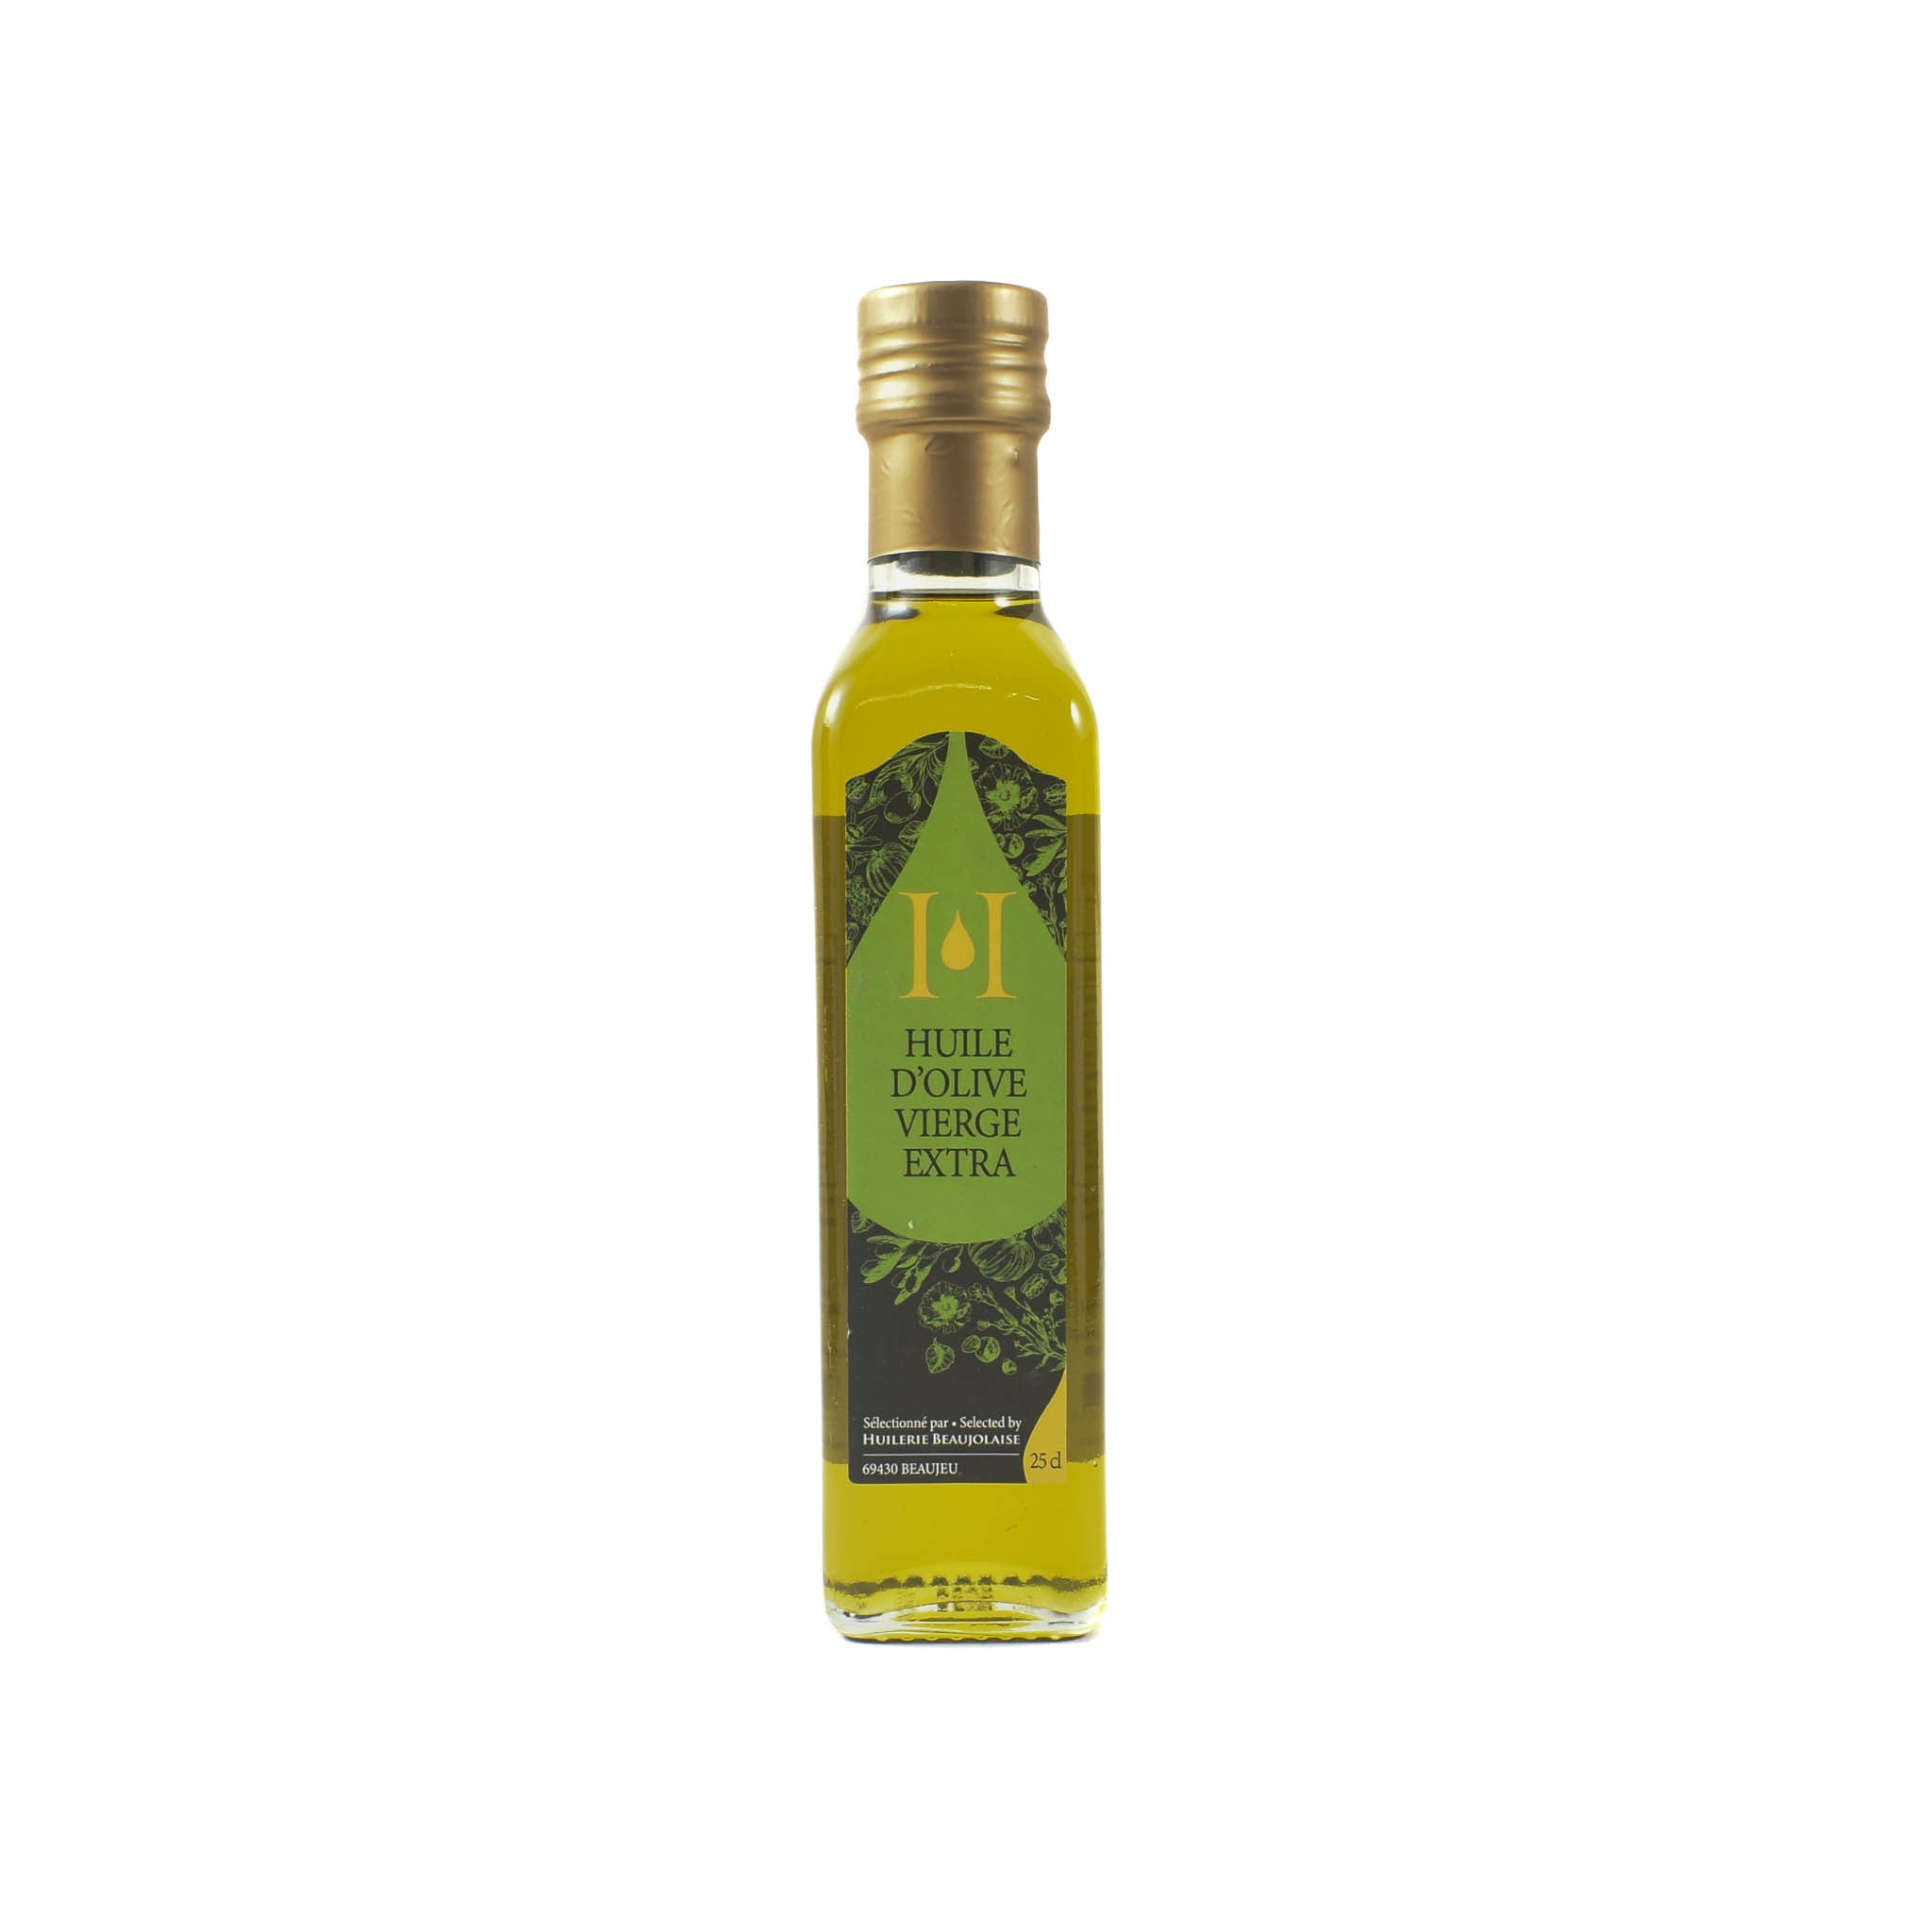 Huilerie Beaujolaise Fruity Green Extra Virgin Olive Oil, 250ml